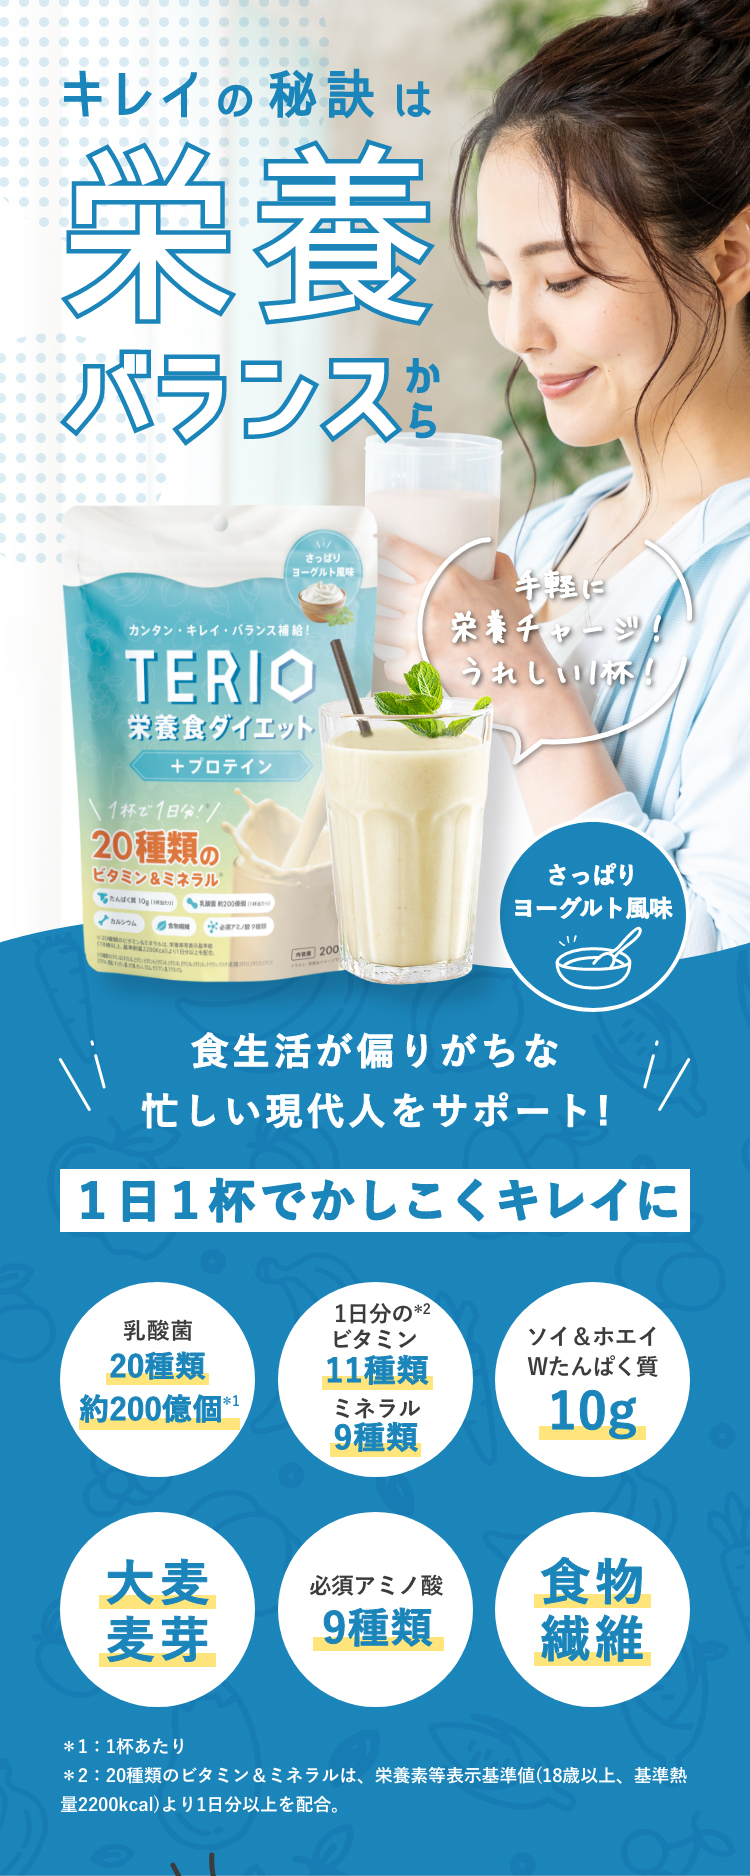 TERIO(テリオ)栄養食ダイエット+プロテイン